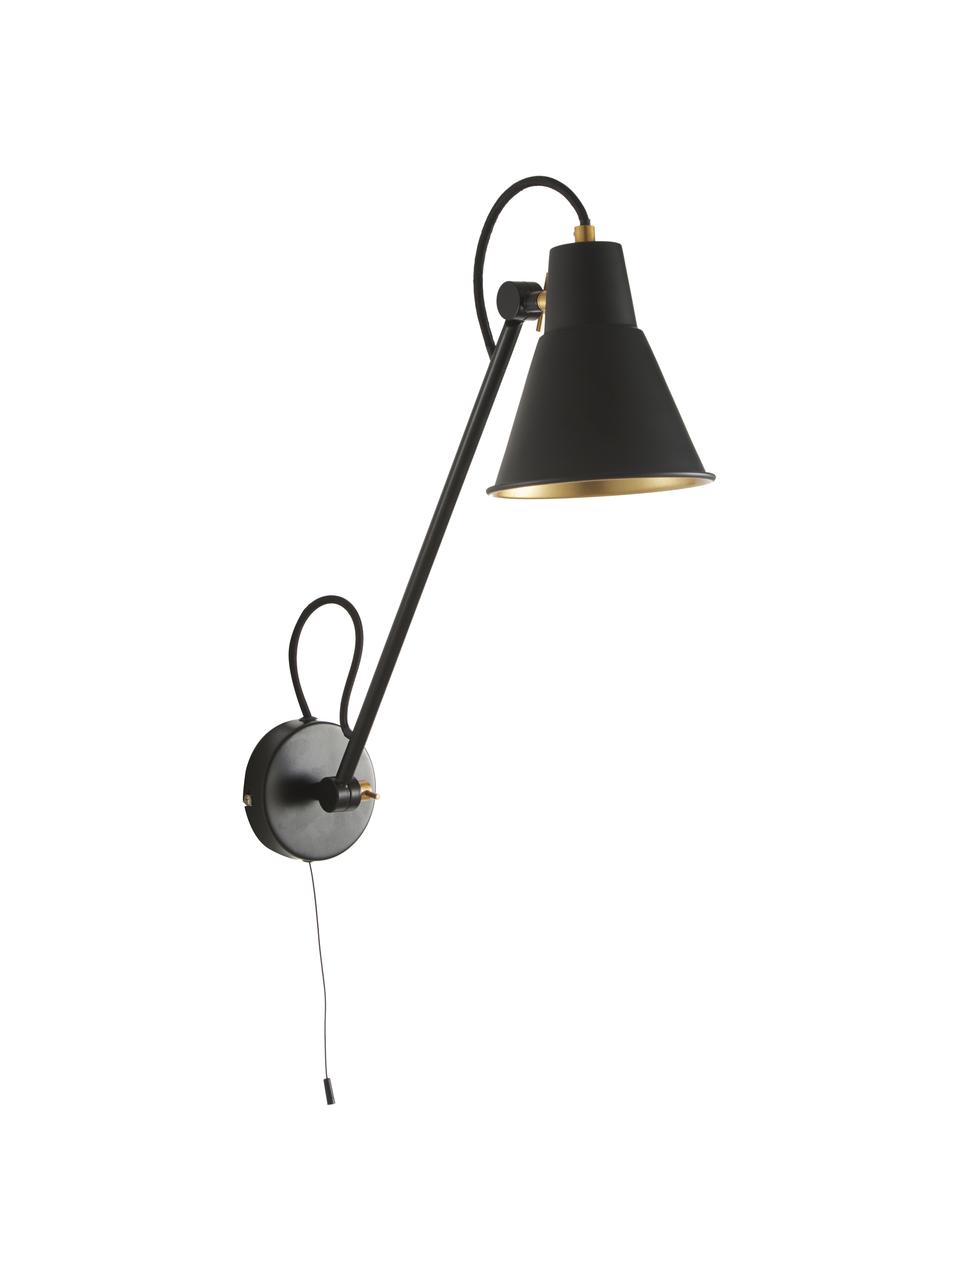 Wandlamp Justa met goudkleurig-decoratie, Lampenkap: gecoat metaal, Frame: gecoat metaal, Zwart, goudkleurig, 14 x 55 cm